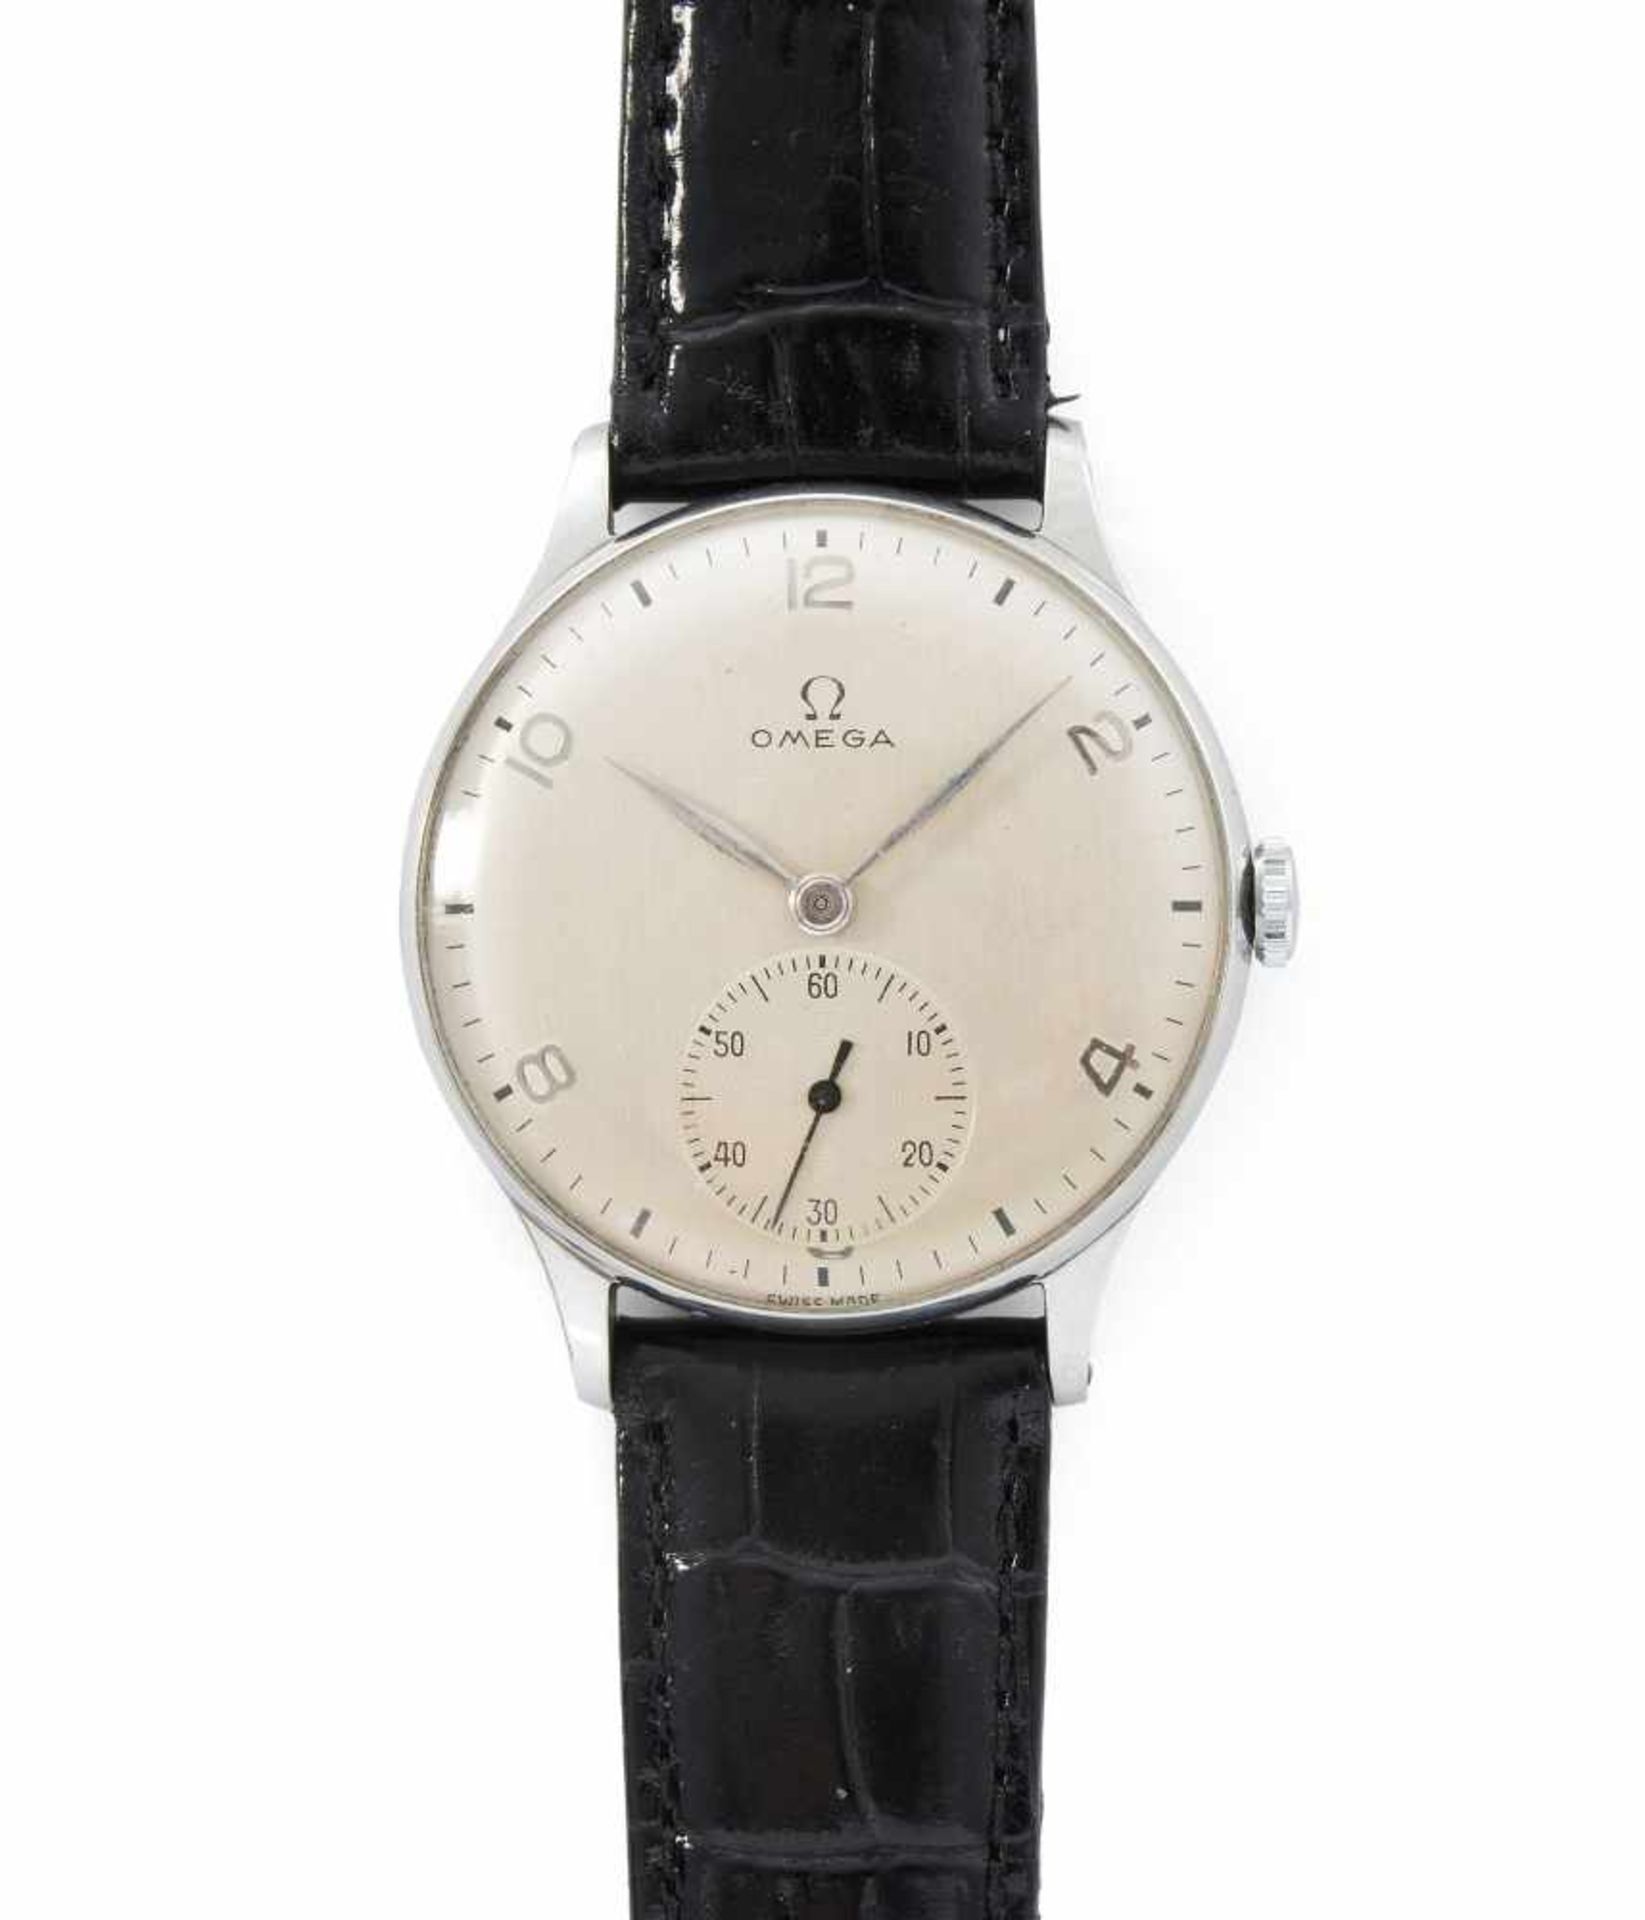 OmegaRunde, mechanische Armbanduhr 1954 mit Handaufzug in Edelstahlgehäuse. Boden gedrückt,